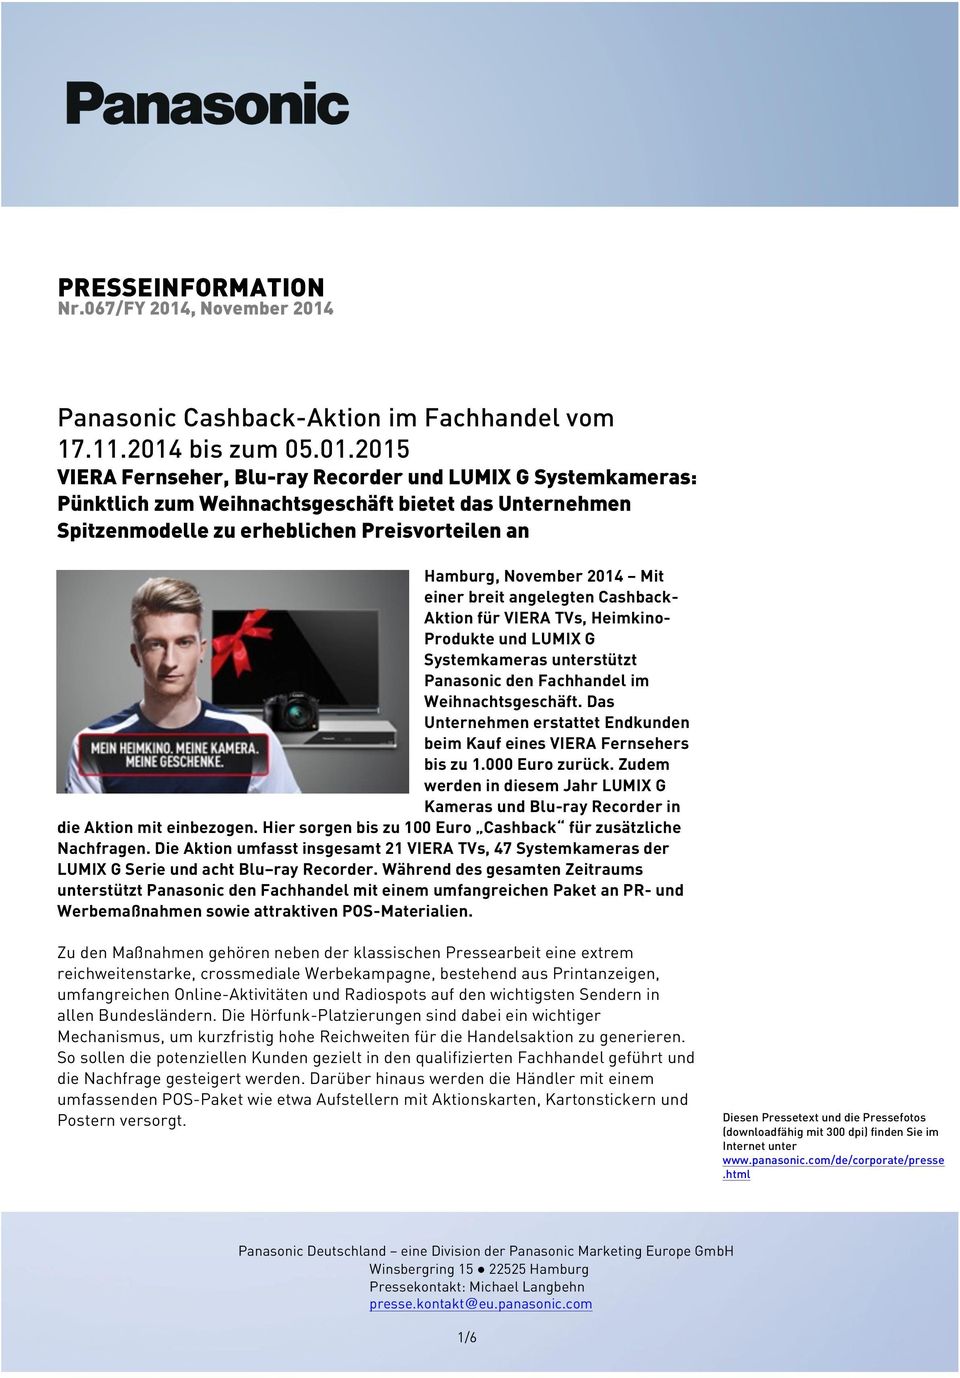 Panasonic Cashback-Aktion im Fachhandel vom 17.11.2014